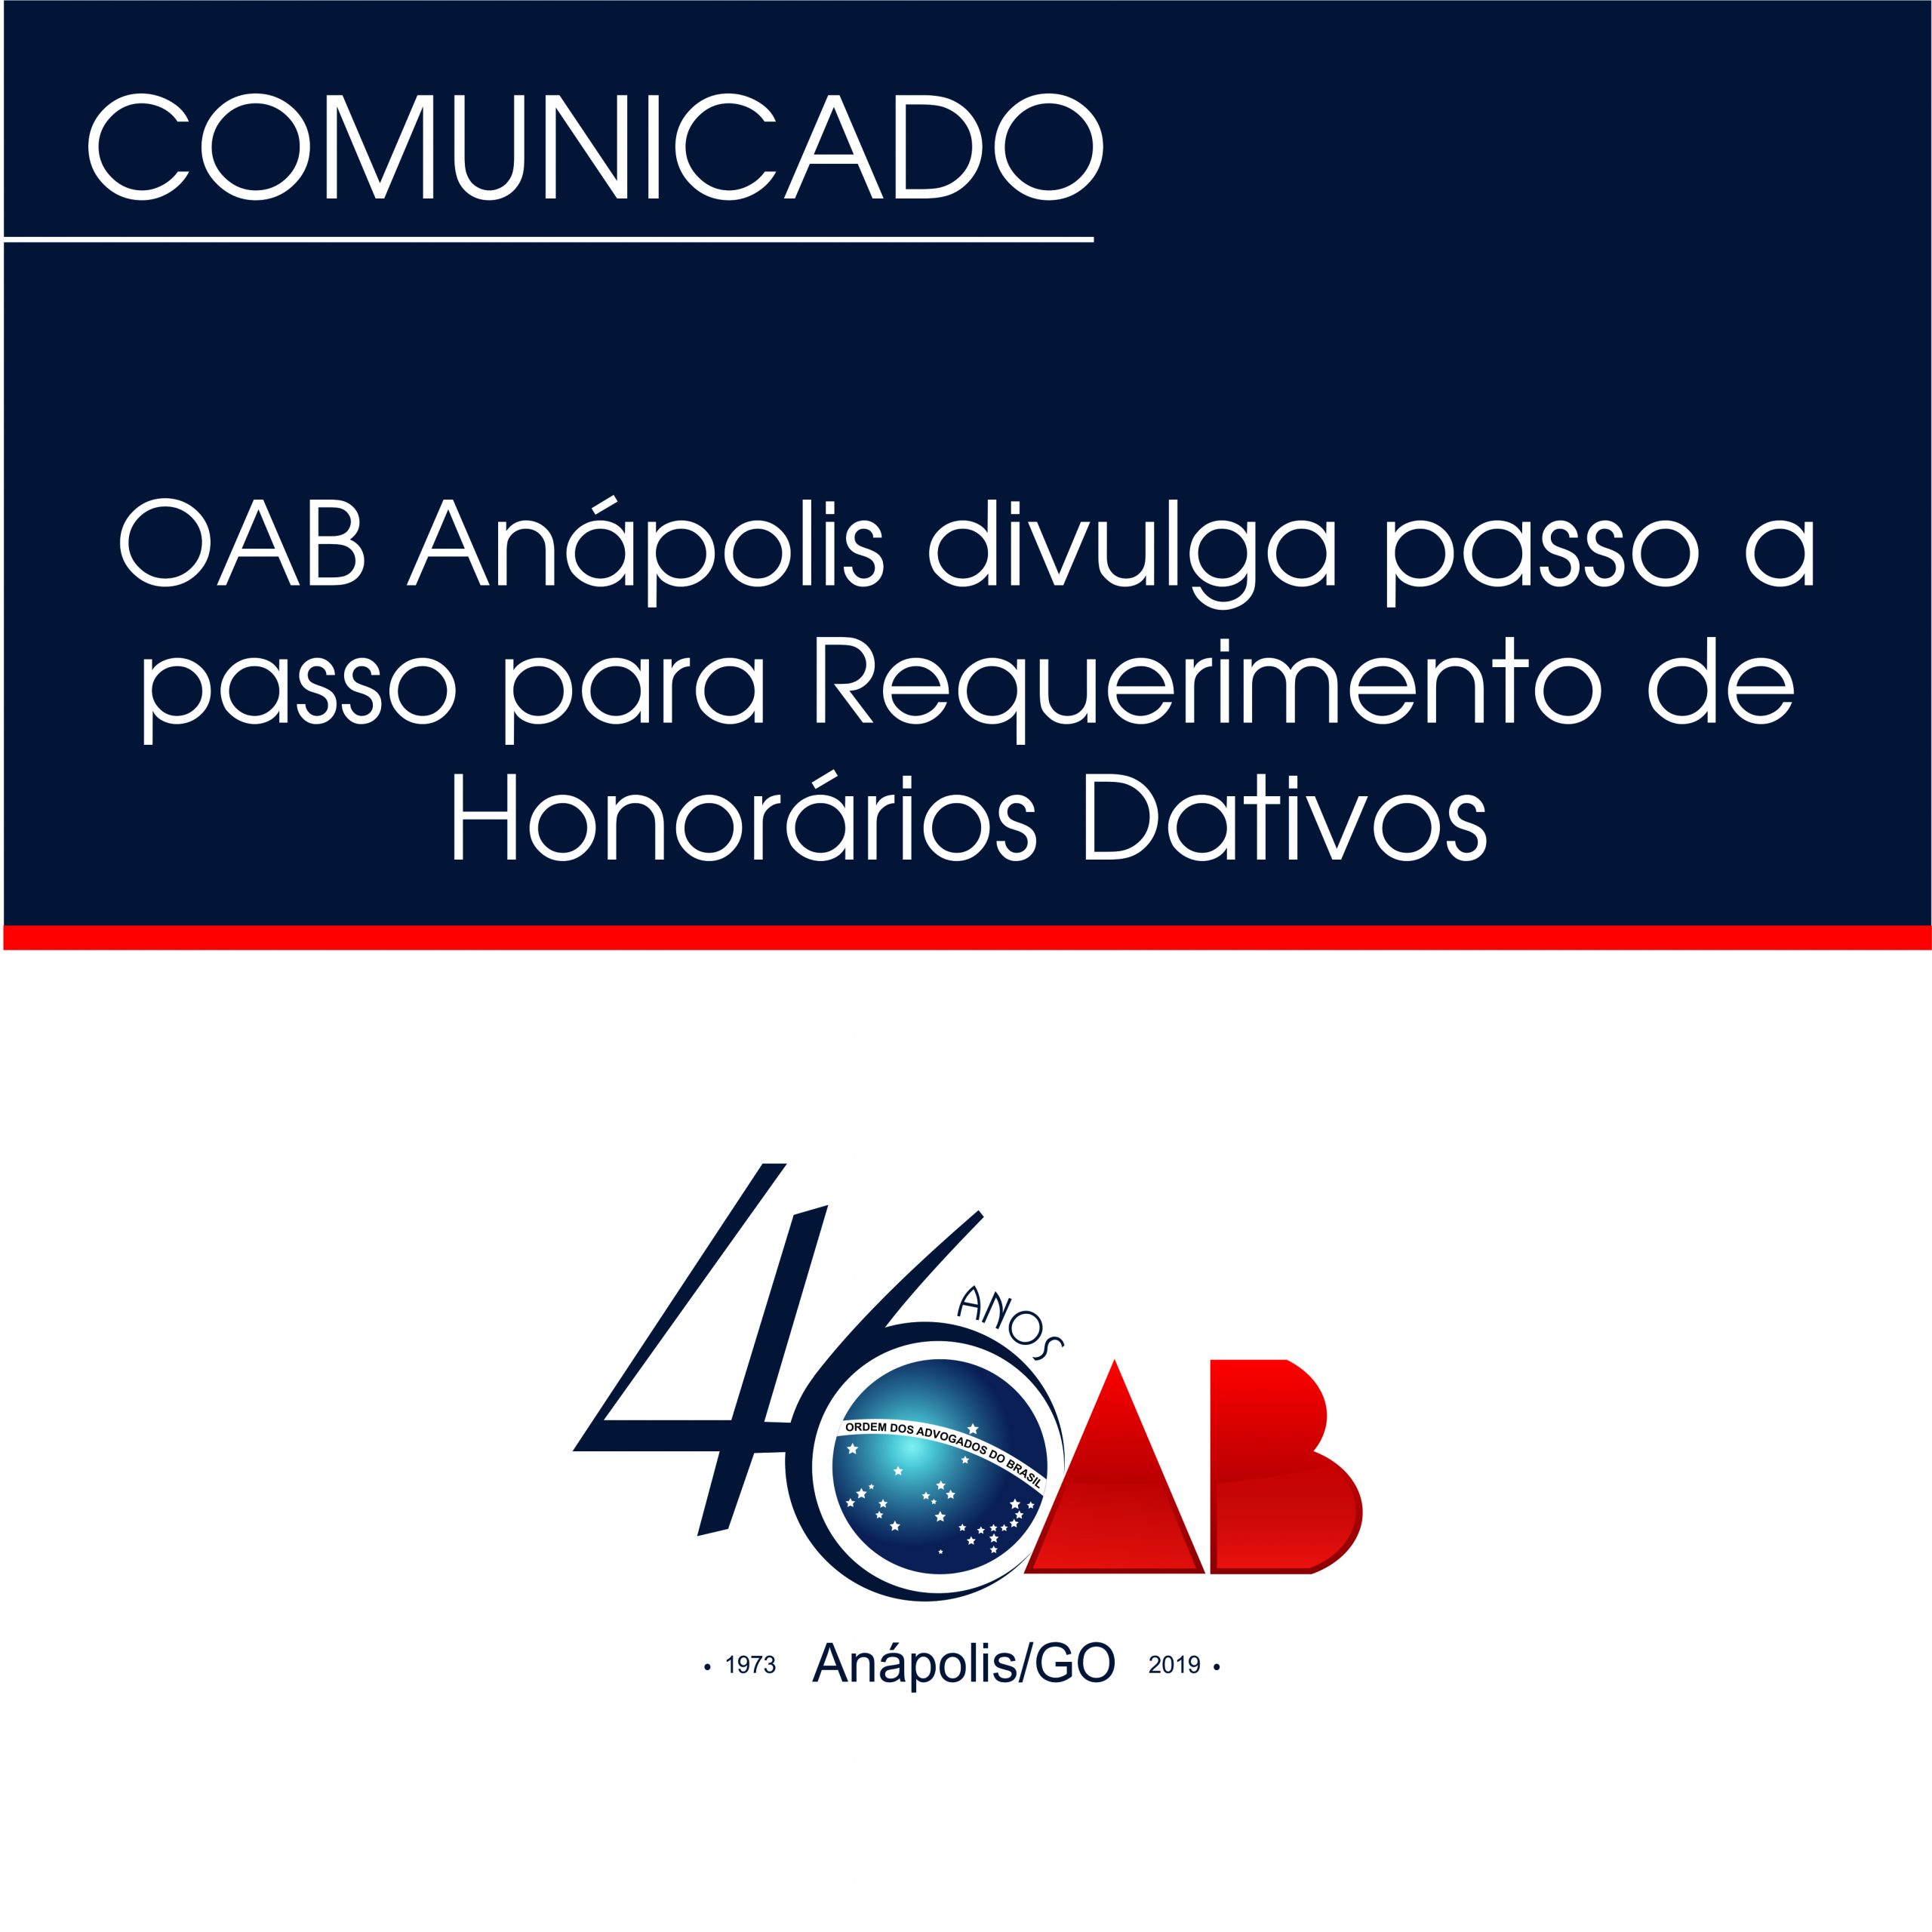 OAB Anápolis divulga passo a passo para Requerimento de Honorários Dativos